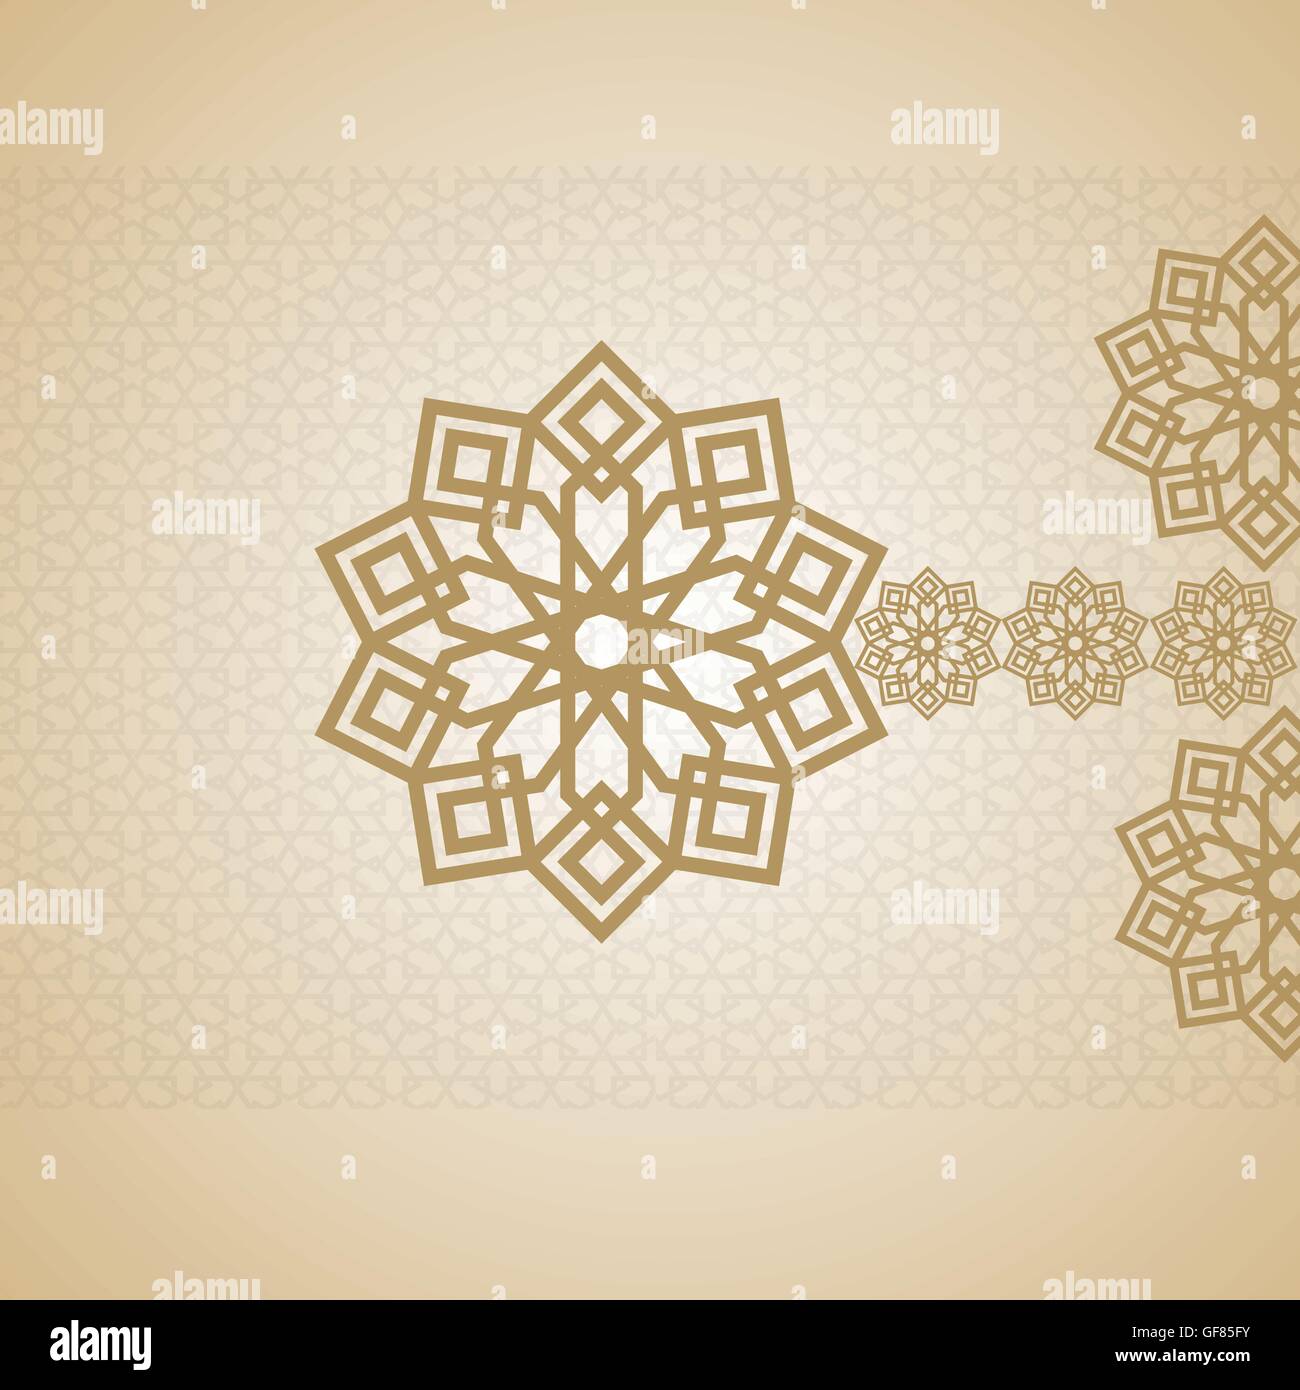 L'arabe la calligraphie islamique des vecteurs de carte de souhaits Eid Mubarak Card design arabe Illustration de Vecteur